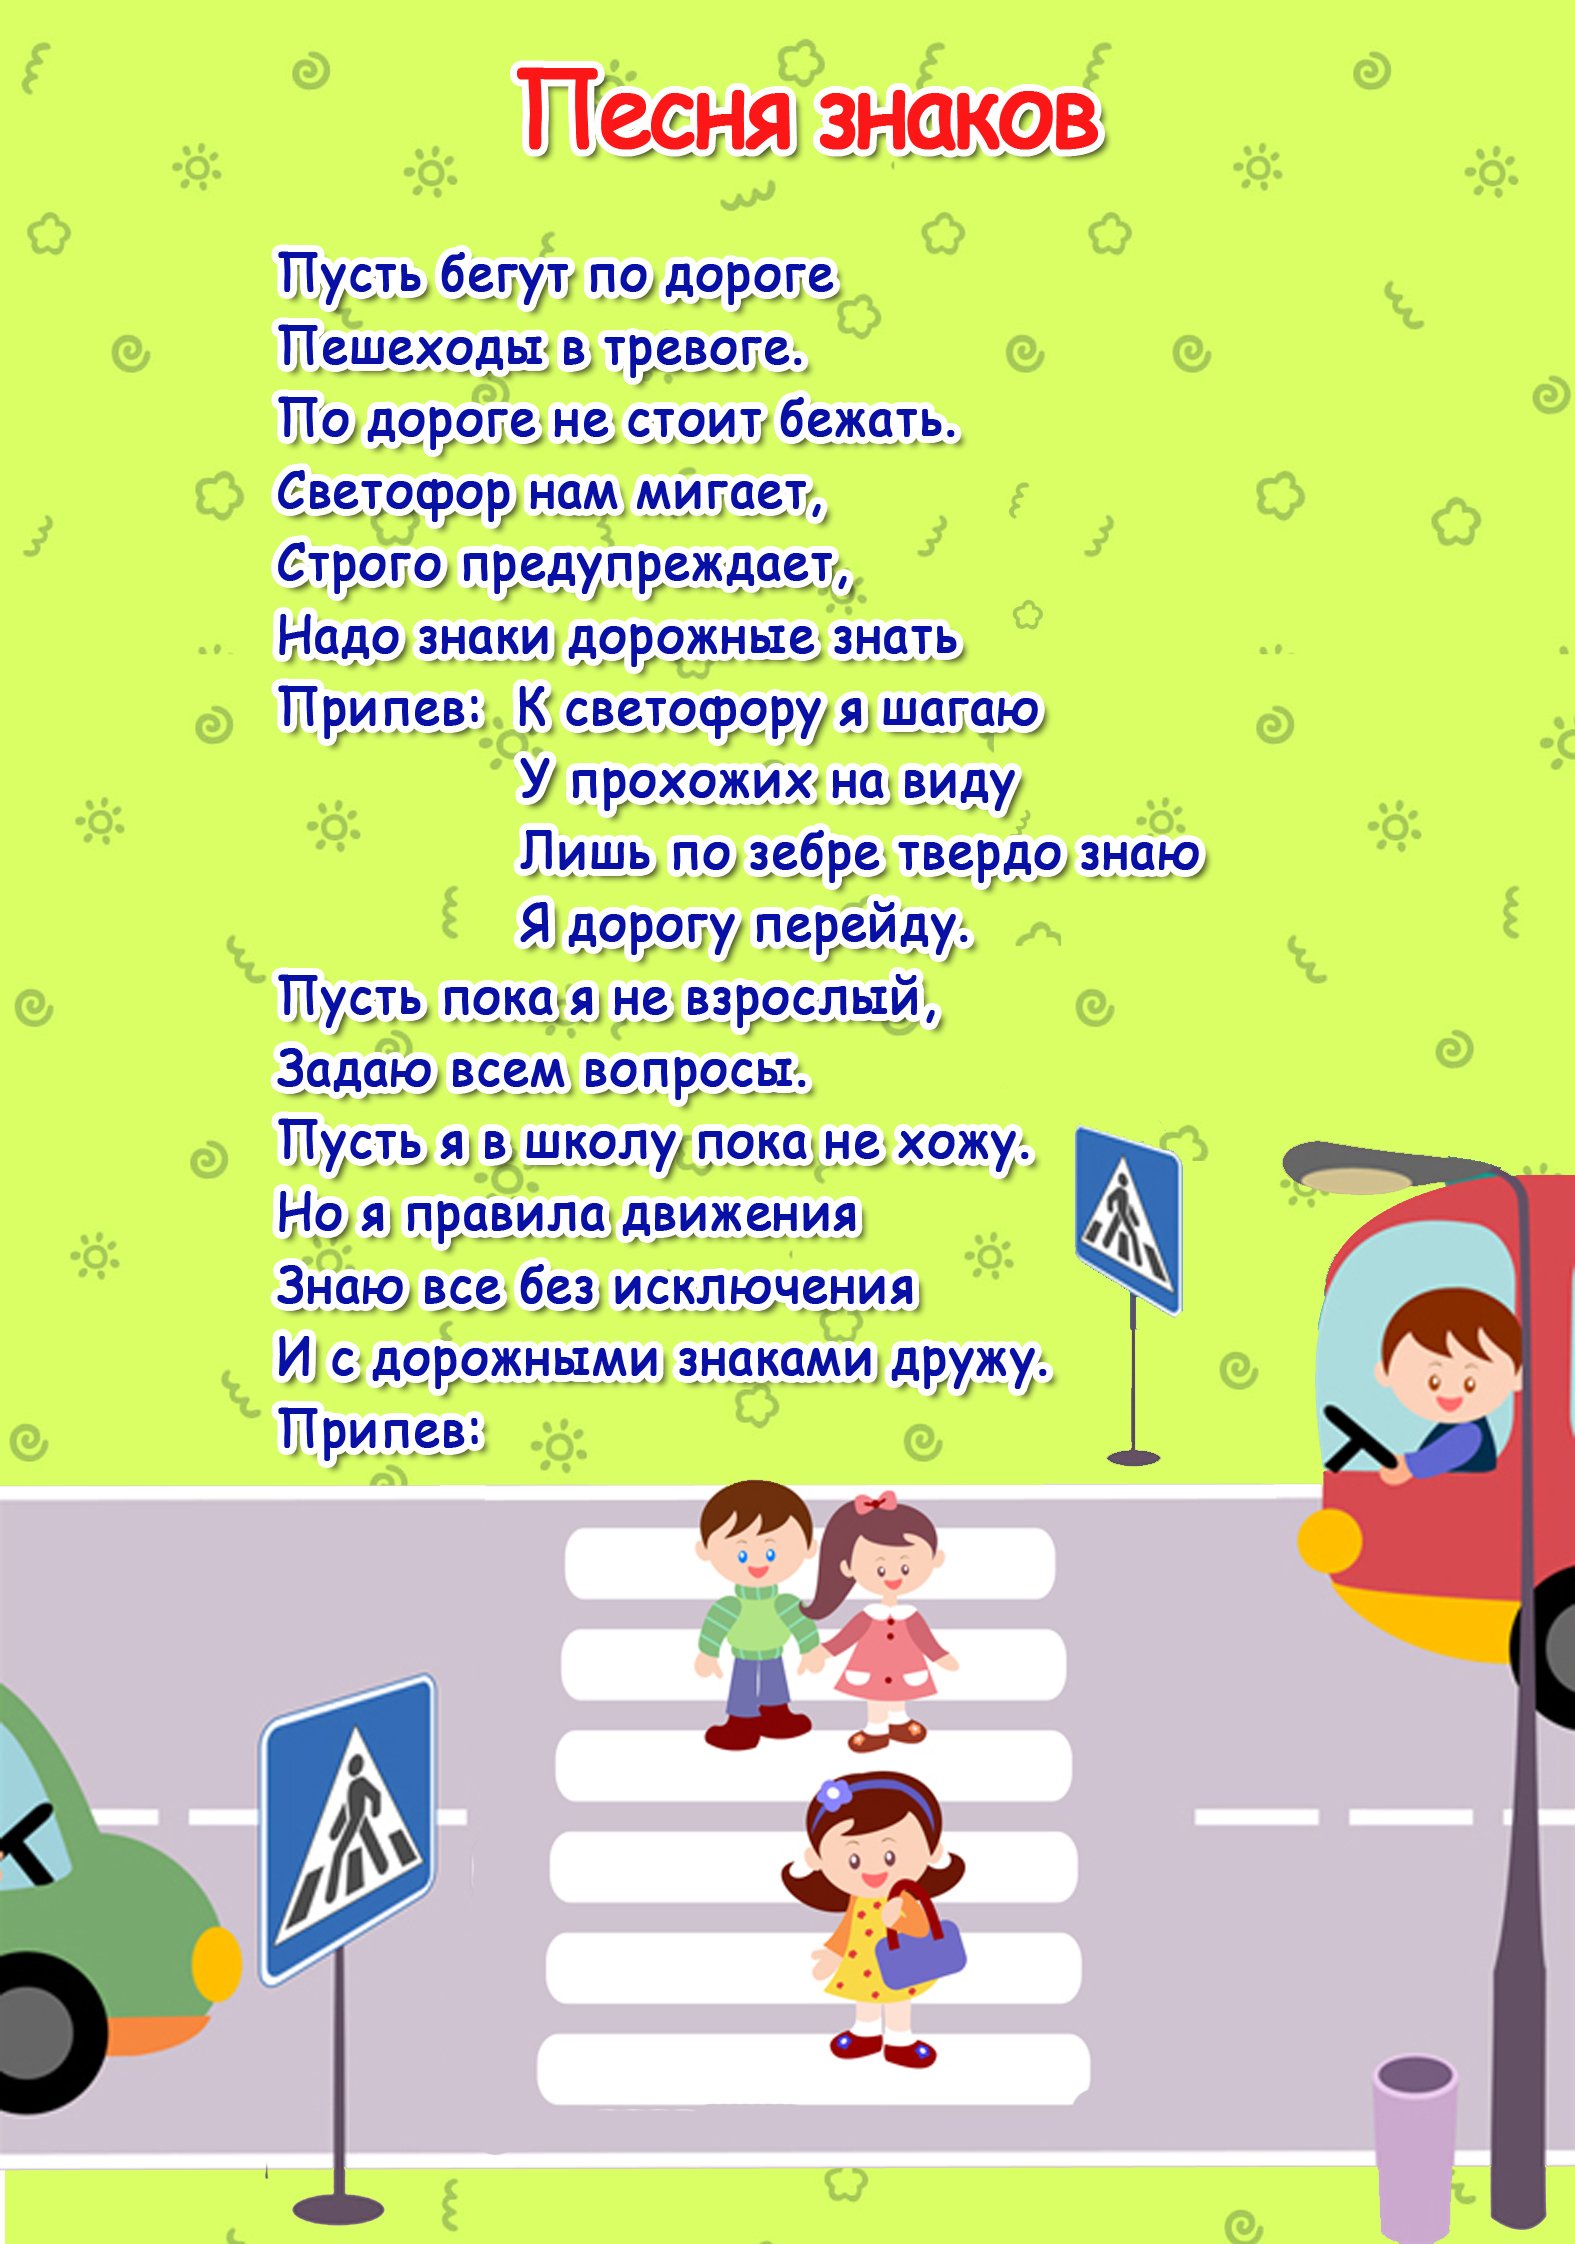 Стихотворение про знак. Стихи по правилам дорожного движения. ПДД для детей. Правила дорожного движения для детей. Стихи про ПДД для детей.